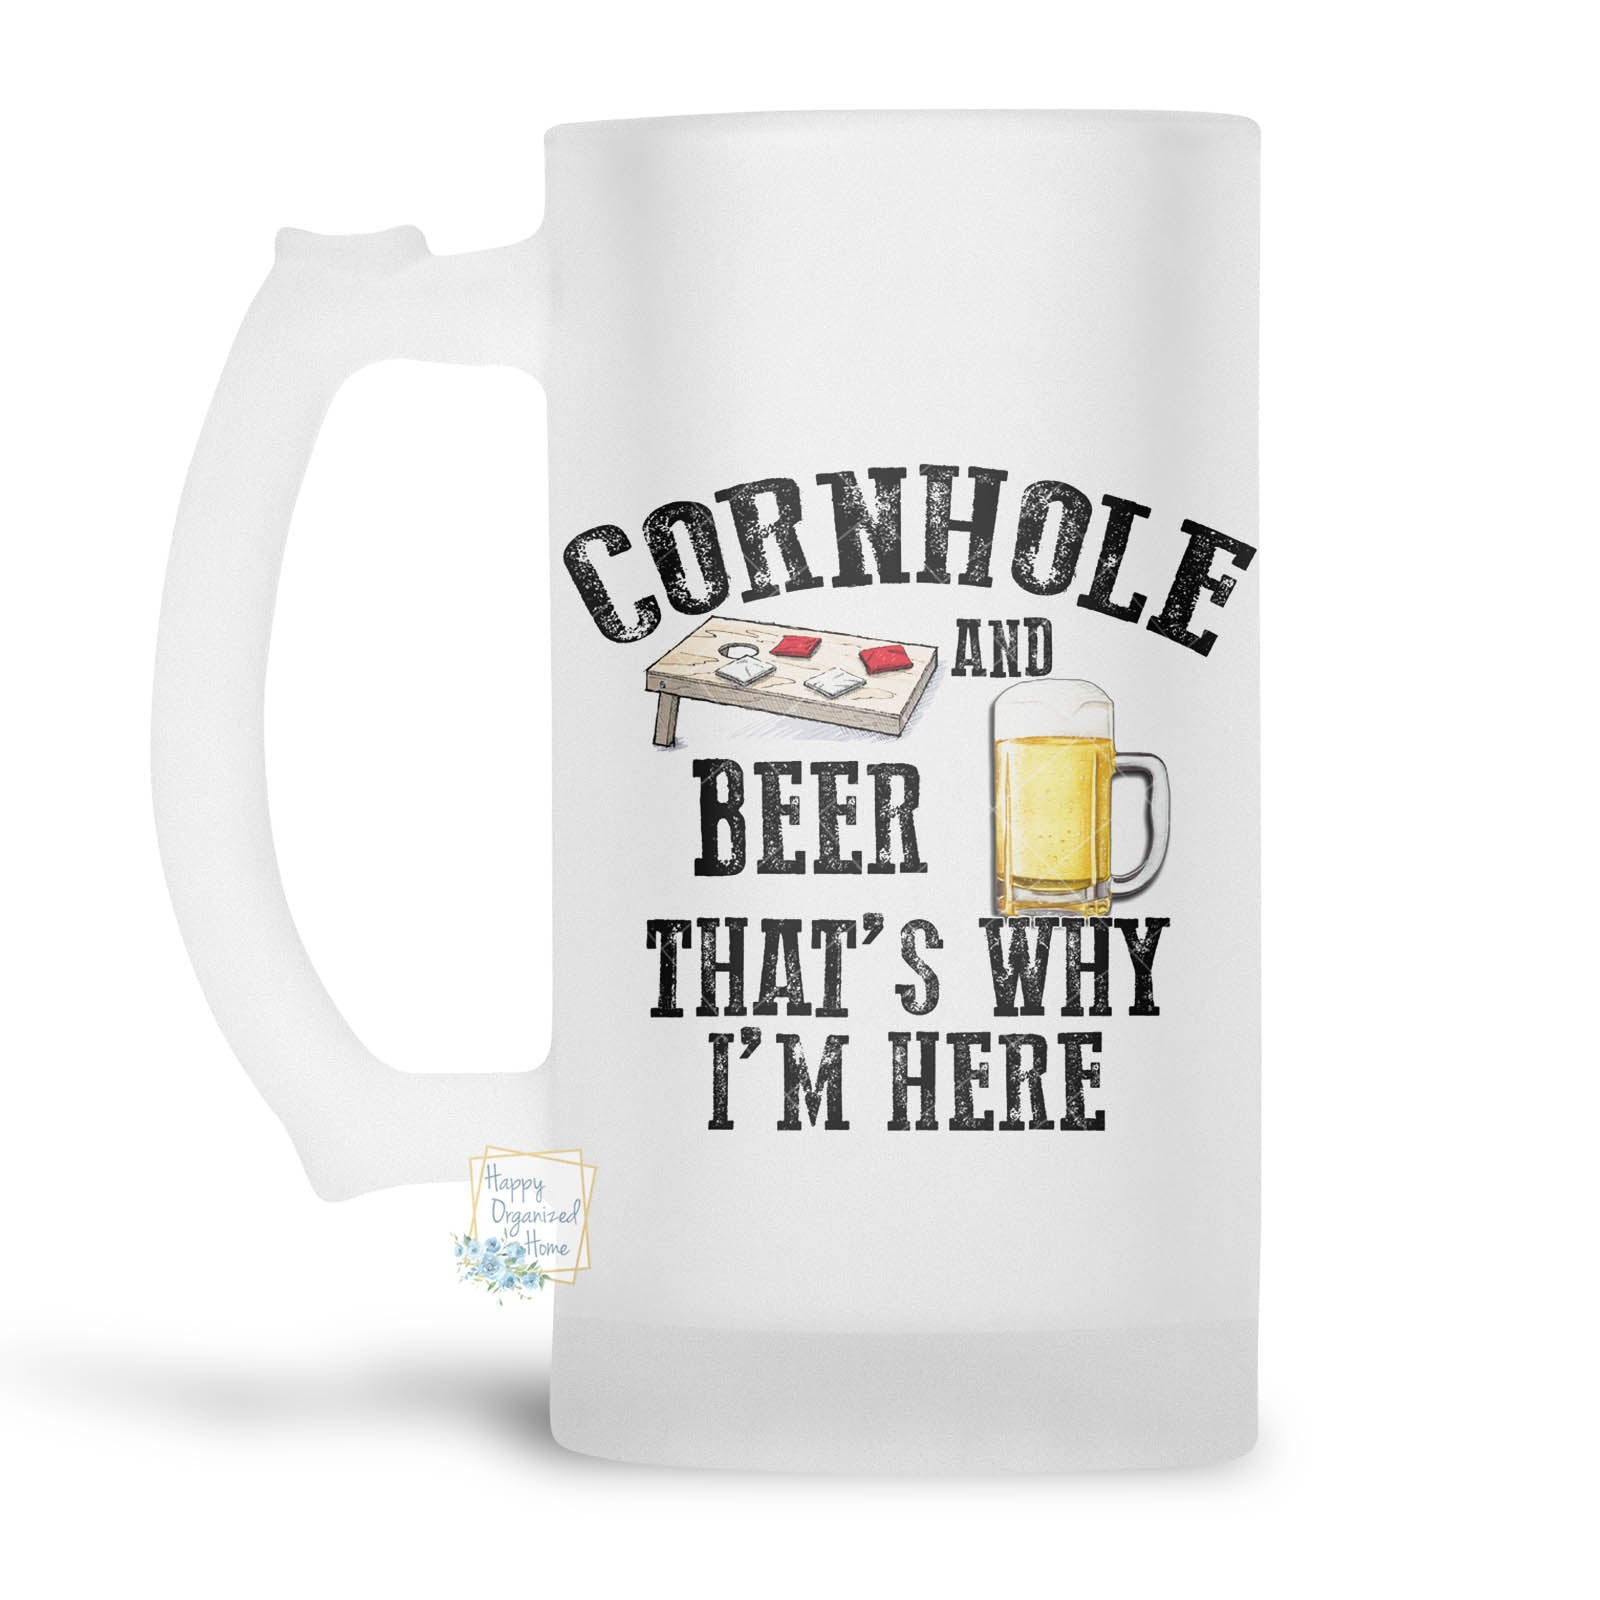 Cornhole and Beer. That's why I'm Here. - Beer Stein, Beer Mug, Printed Beer Mug